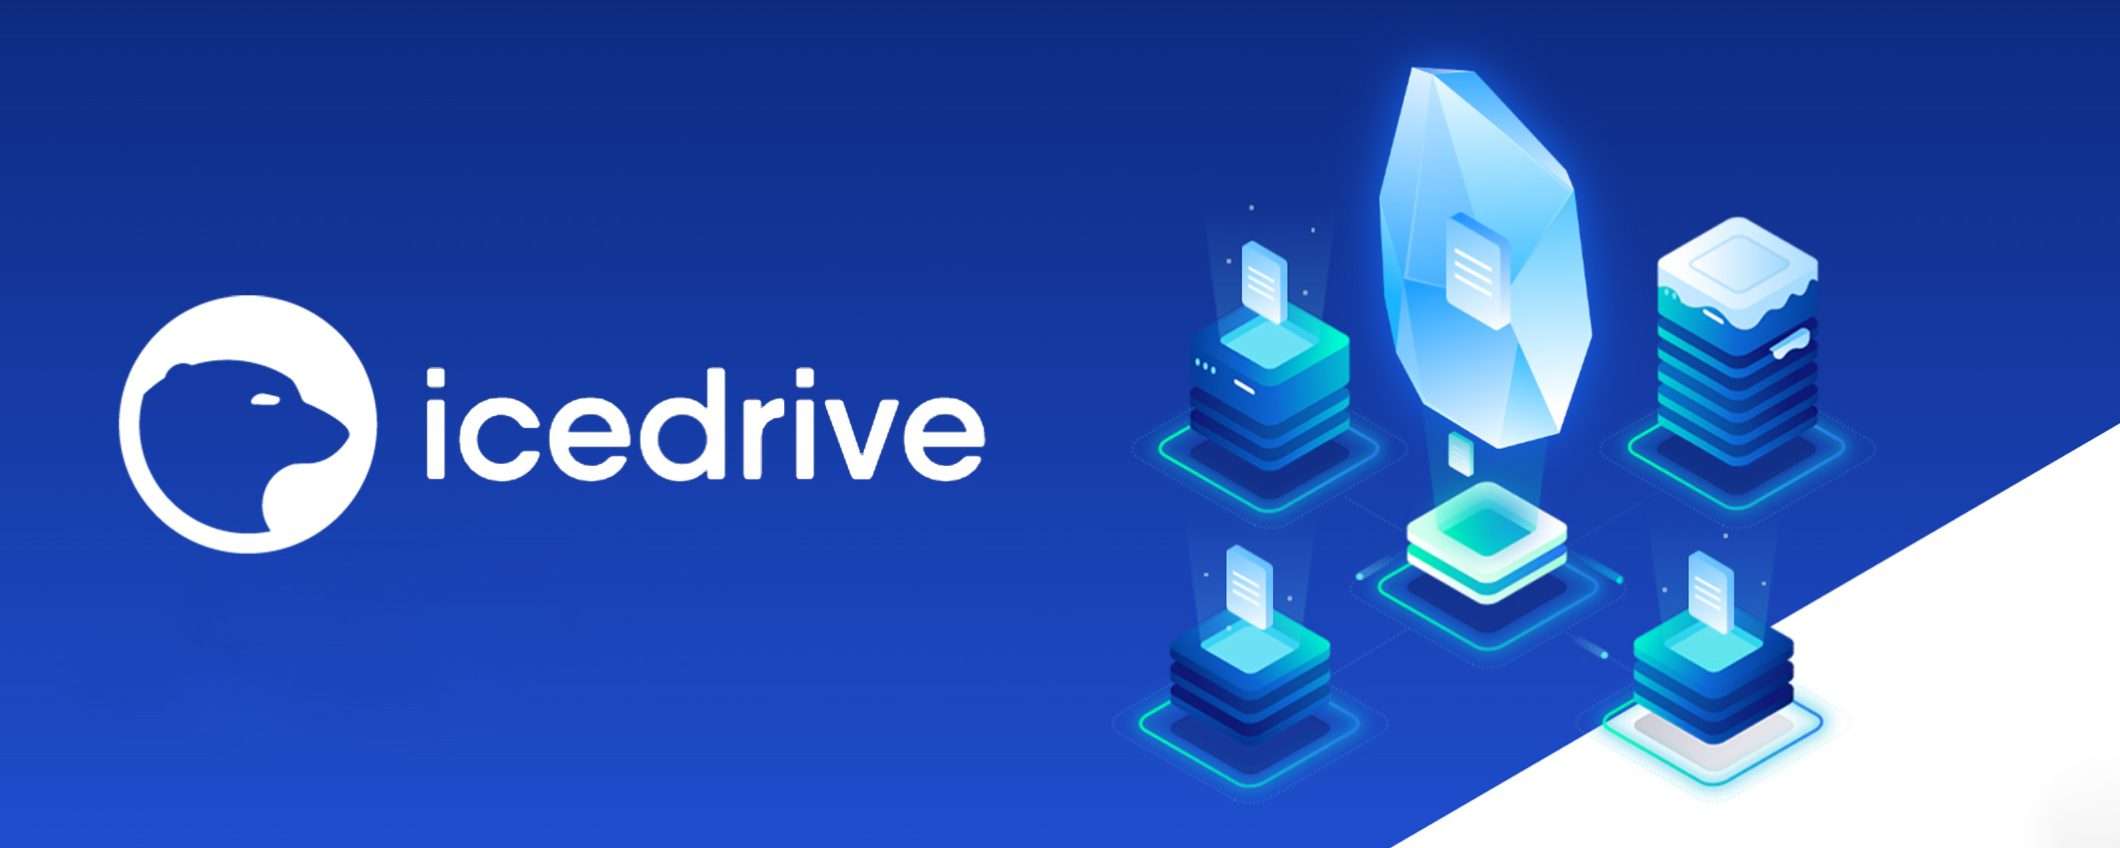 IceDrive, il tuo cloud sempre accessibile: ottieni 10 GB gratis